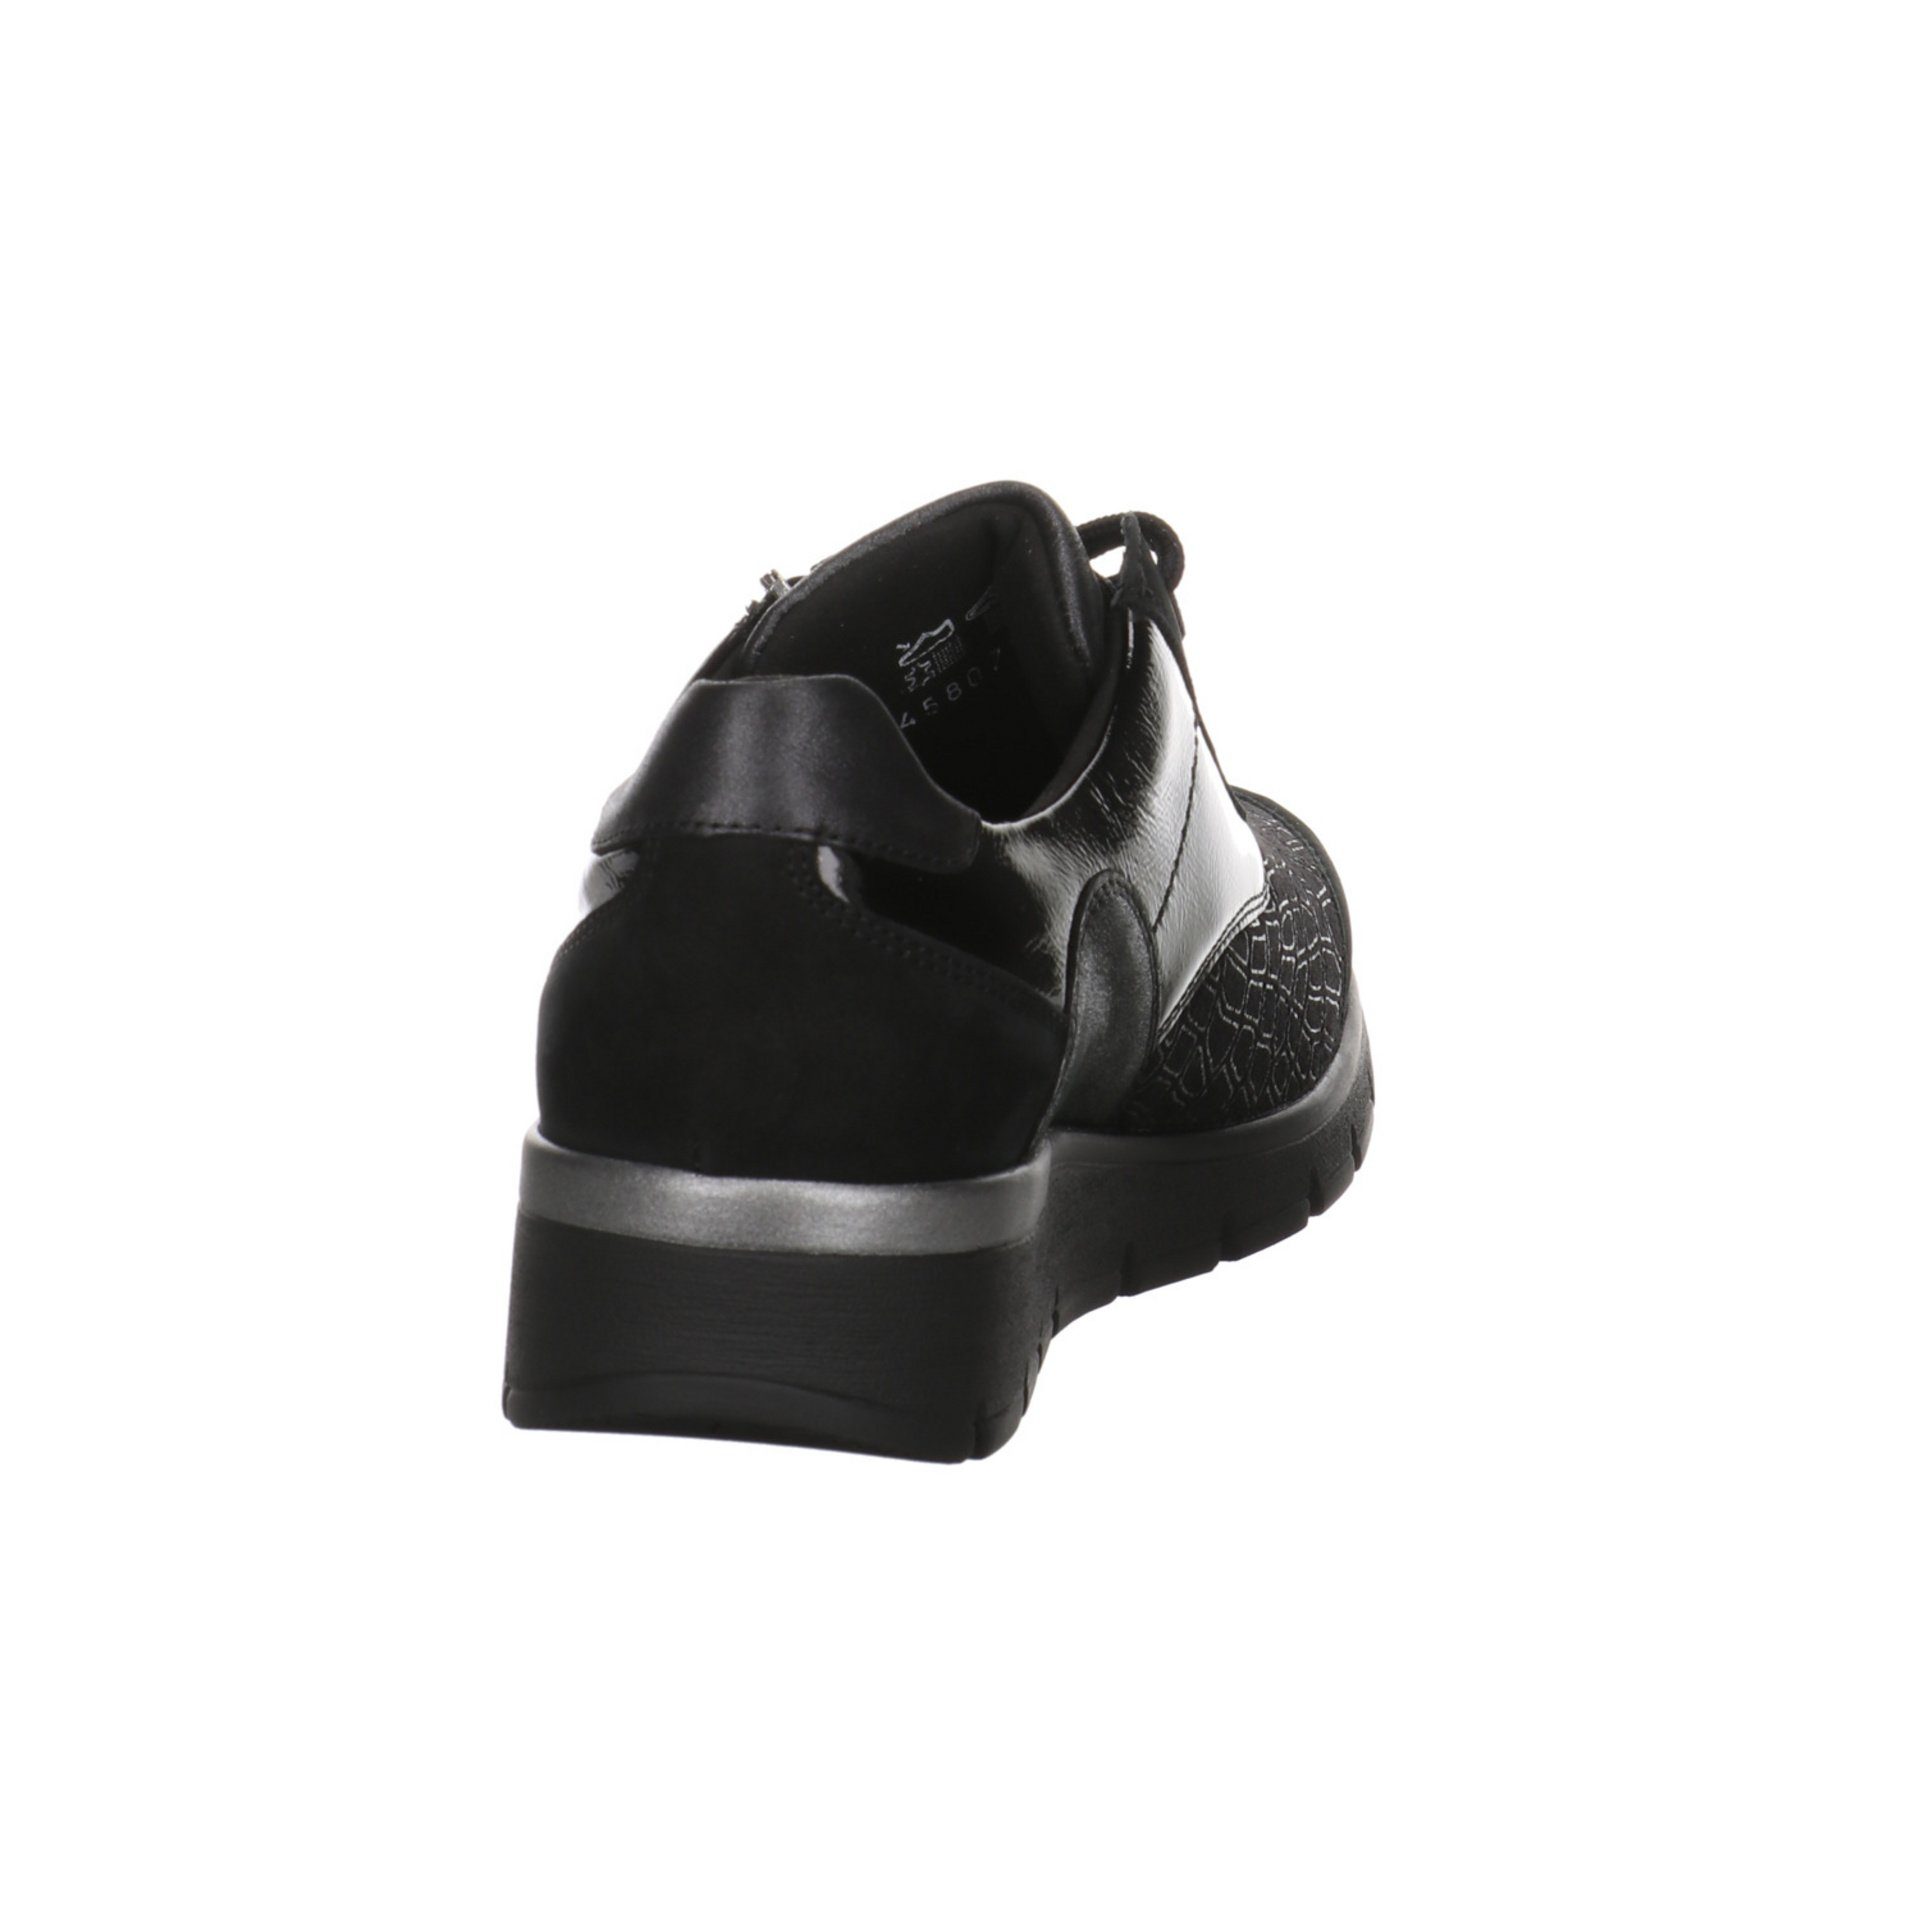 Waldläufer Damen Schnürschuh K-Ramona schwarz Leder-/Textilkombination Schnürhalbschuhe Schnürschuh